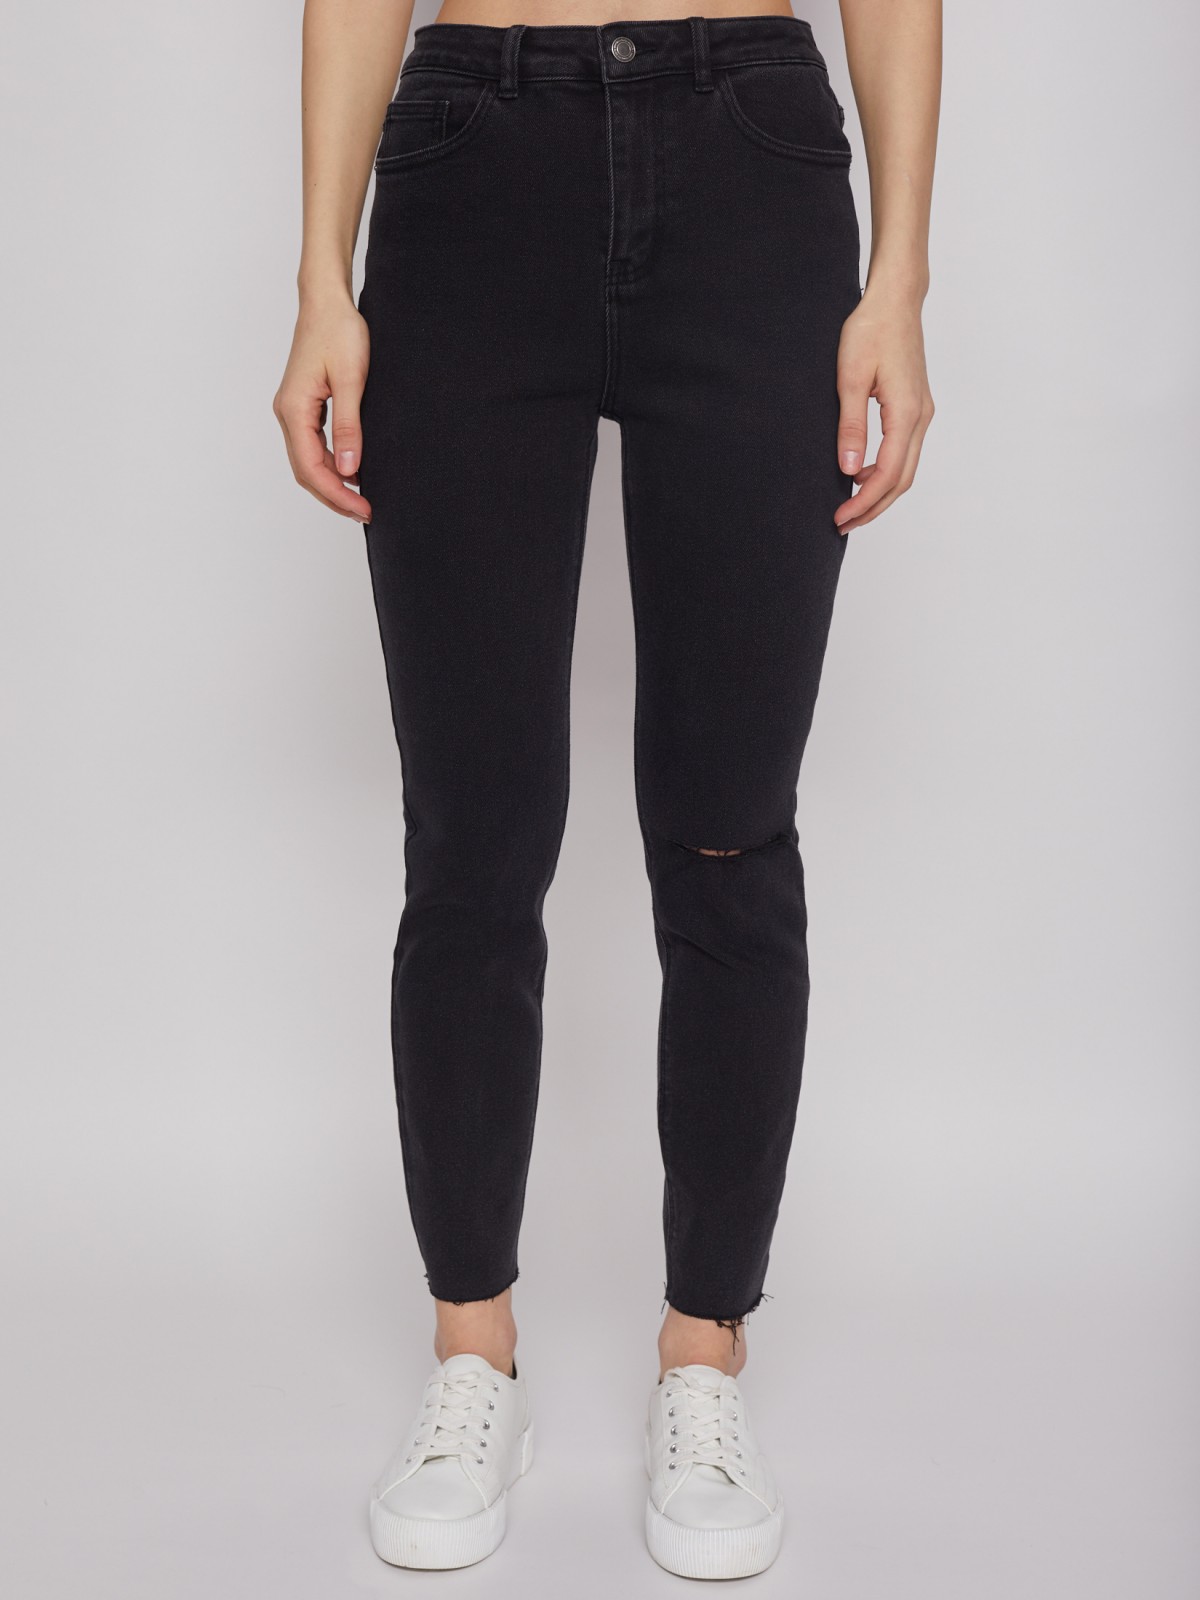 Брюки джинсовые zolla 22221711S043, цвет черный, размер 25 - фото 2